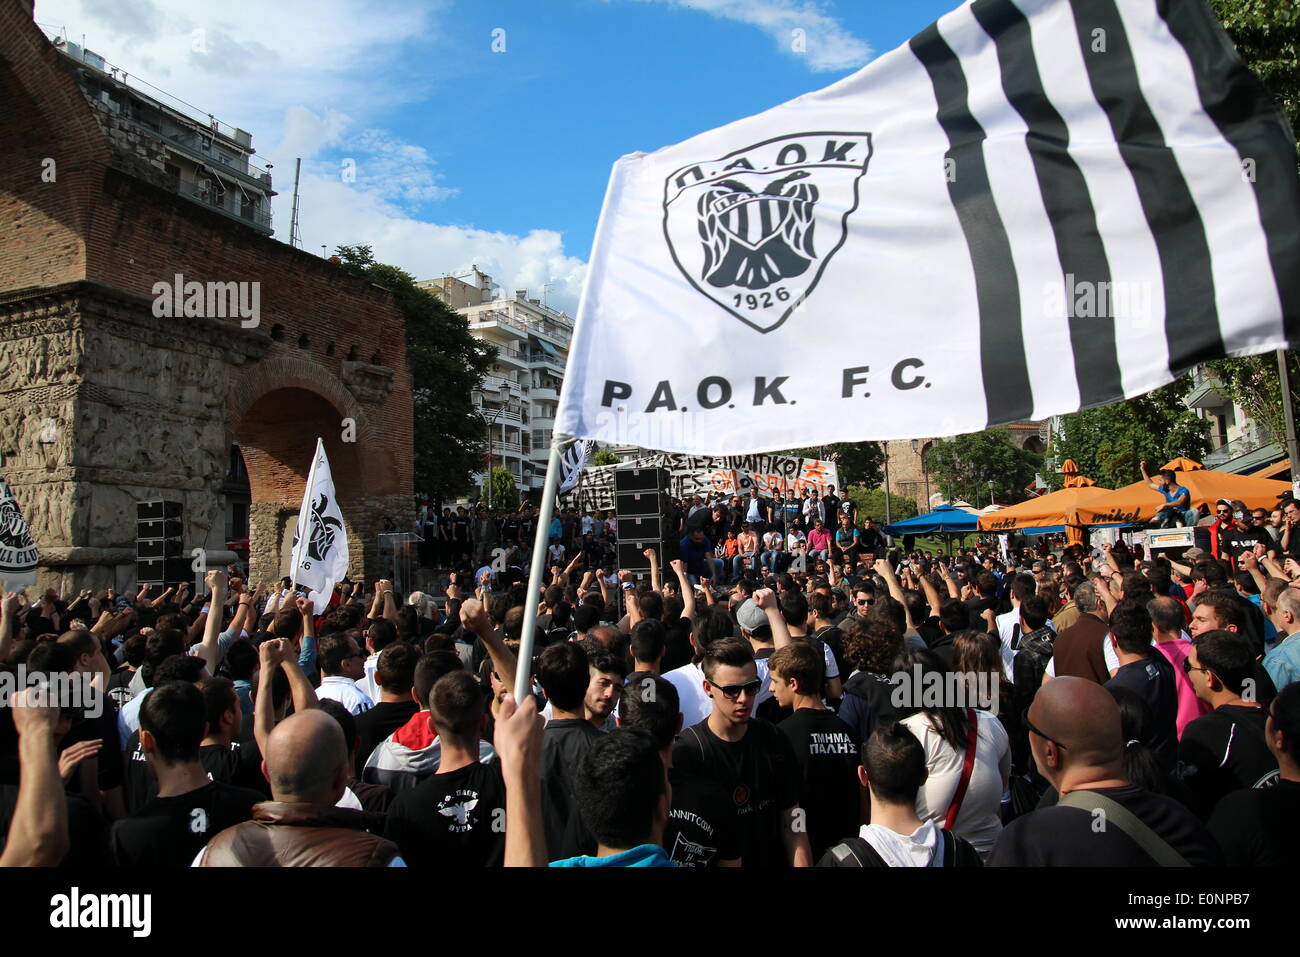 Besiktas Istanbul & PAOK Thessaloniki